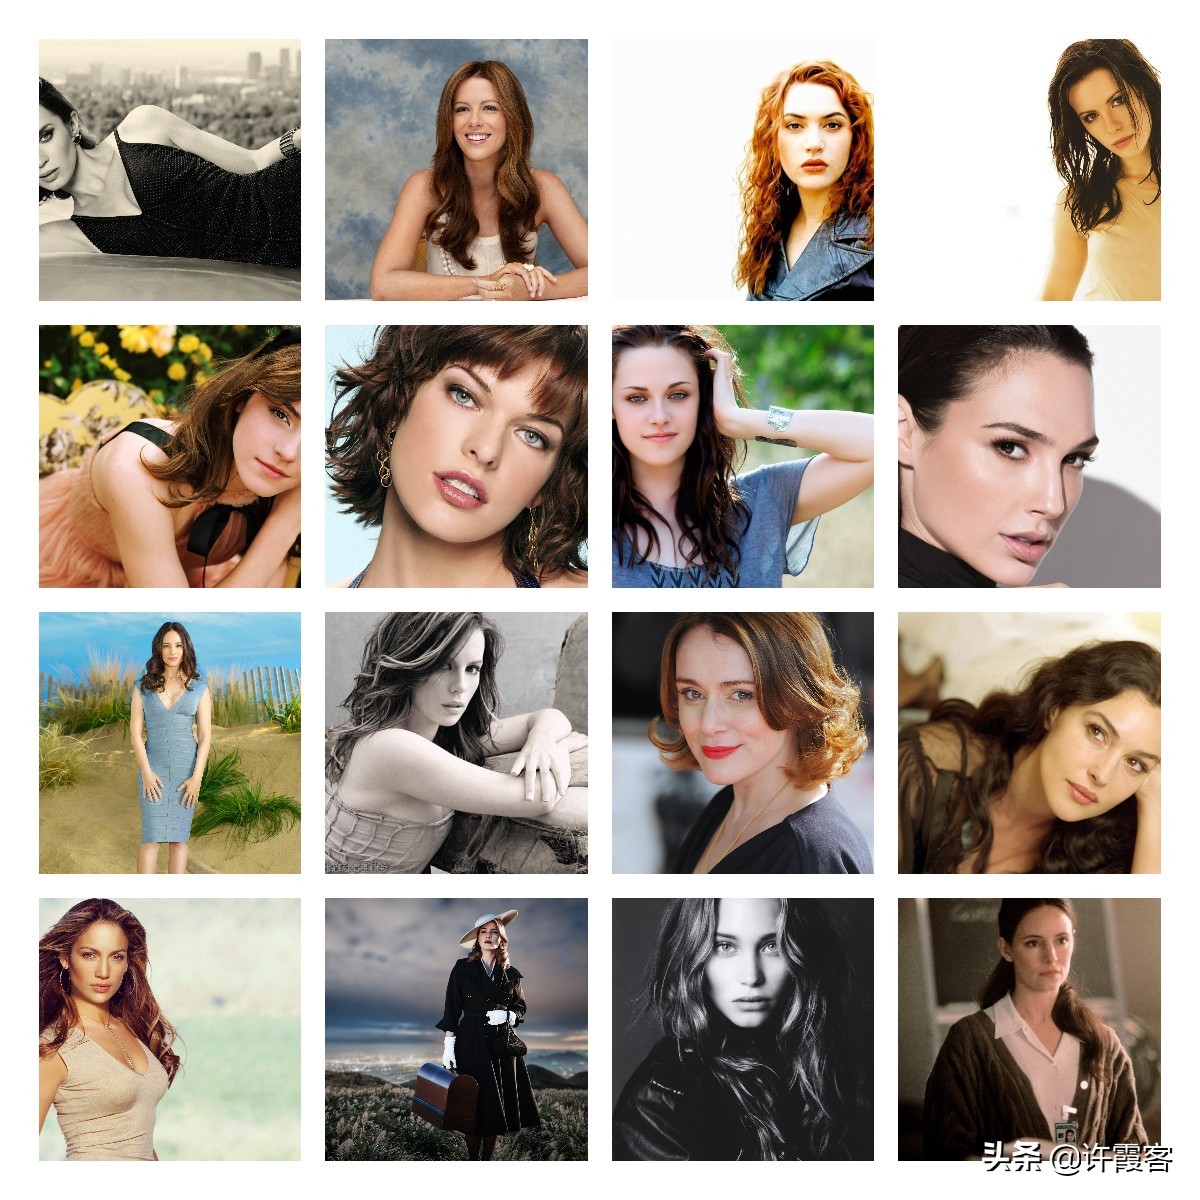 现实世界欧美最性感的27个美女，你心中最喜欢的第一美女是谁？